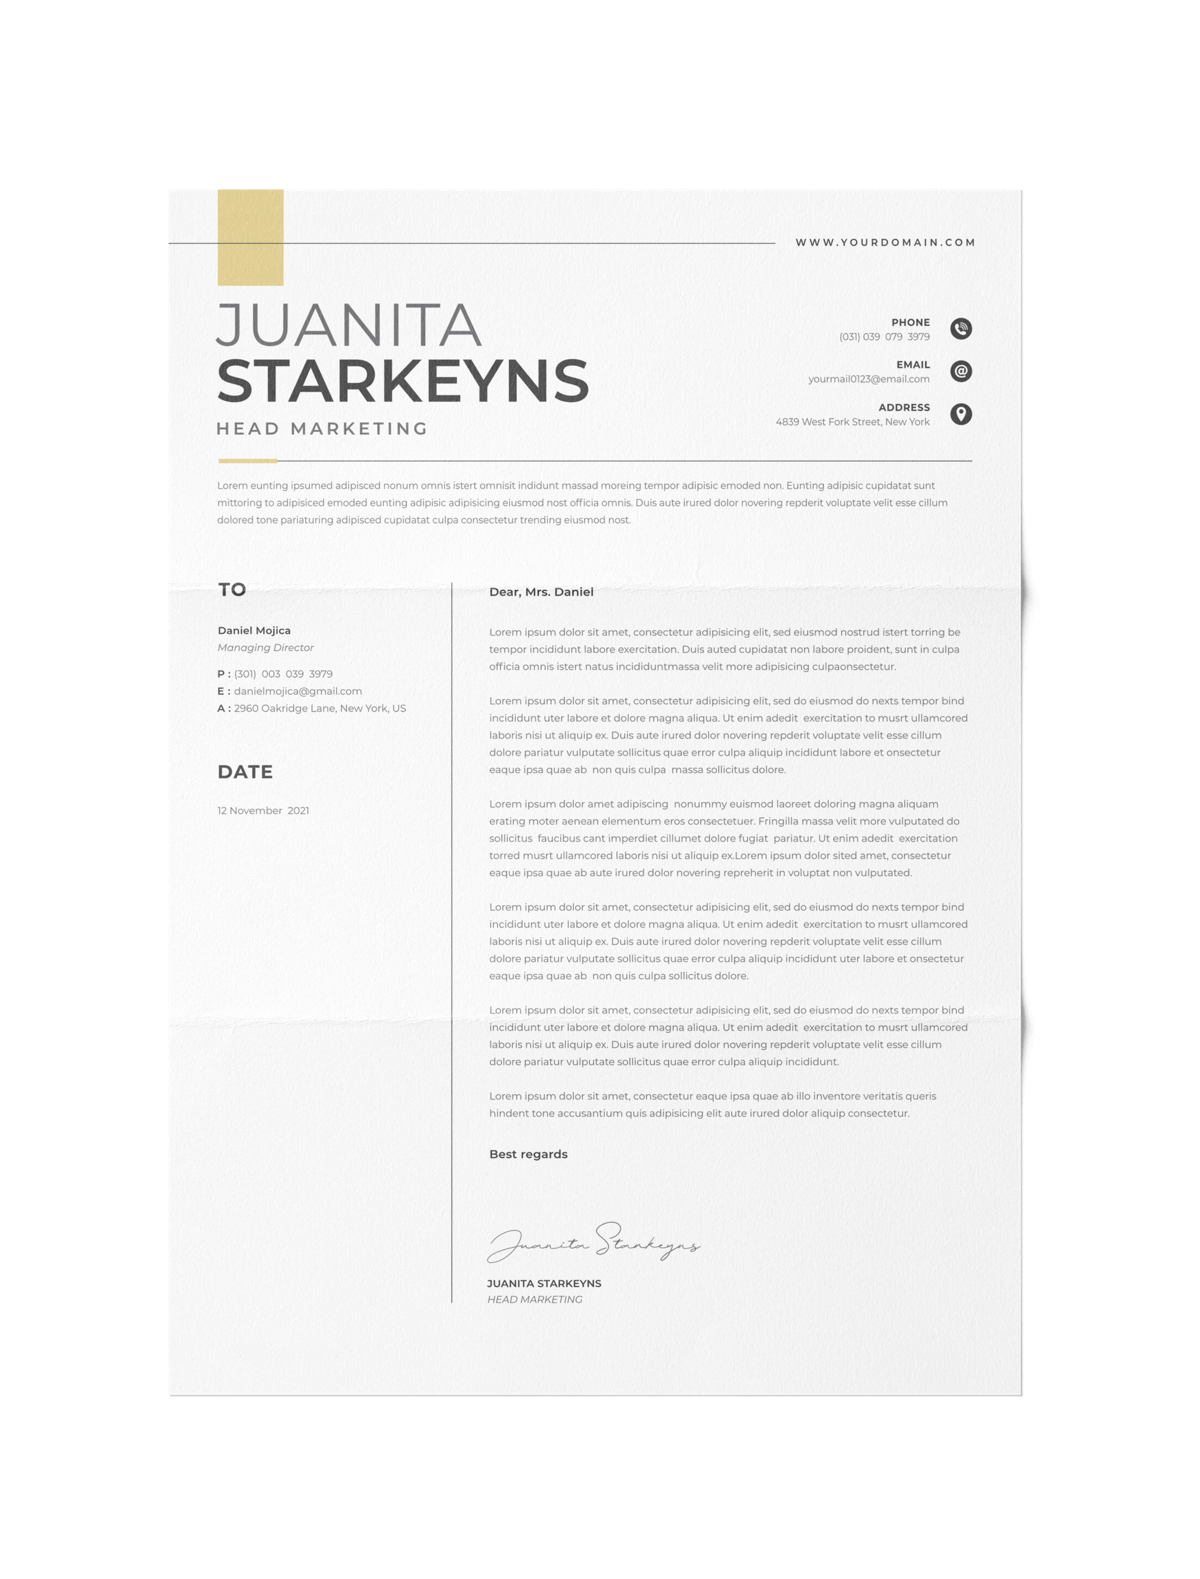 CV #130 Juanita Starkeyns